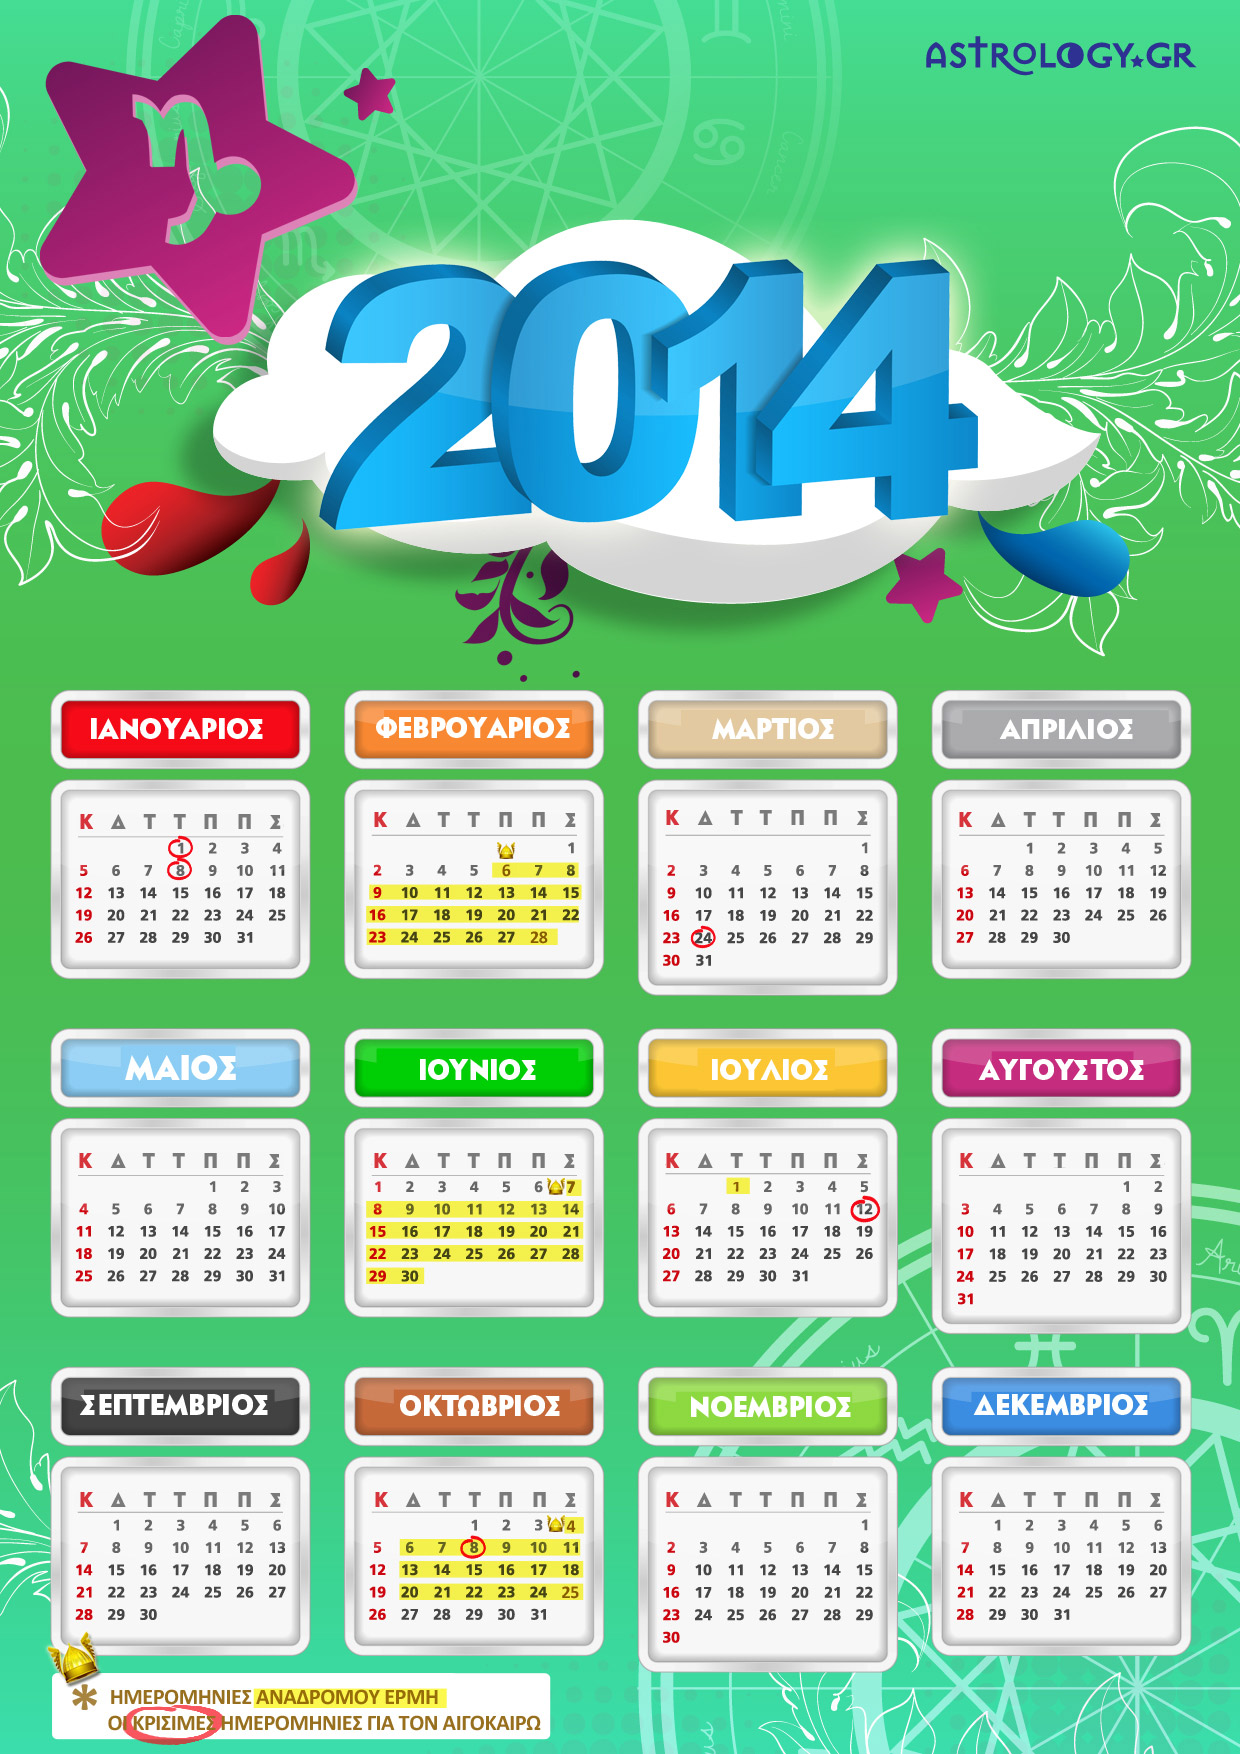 AIGOK calendar